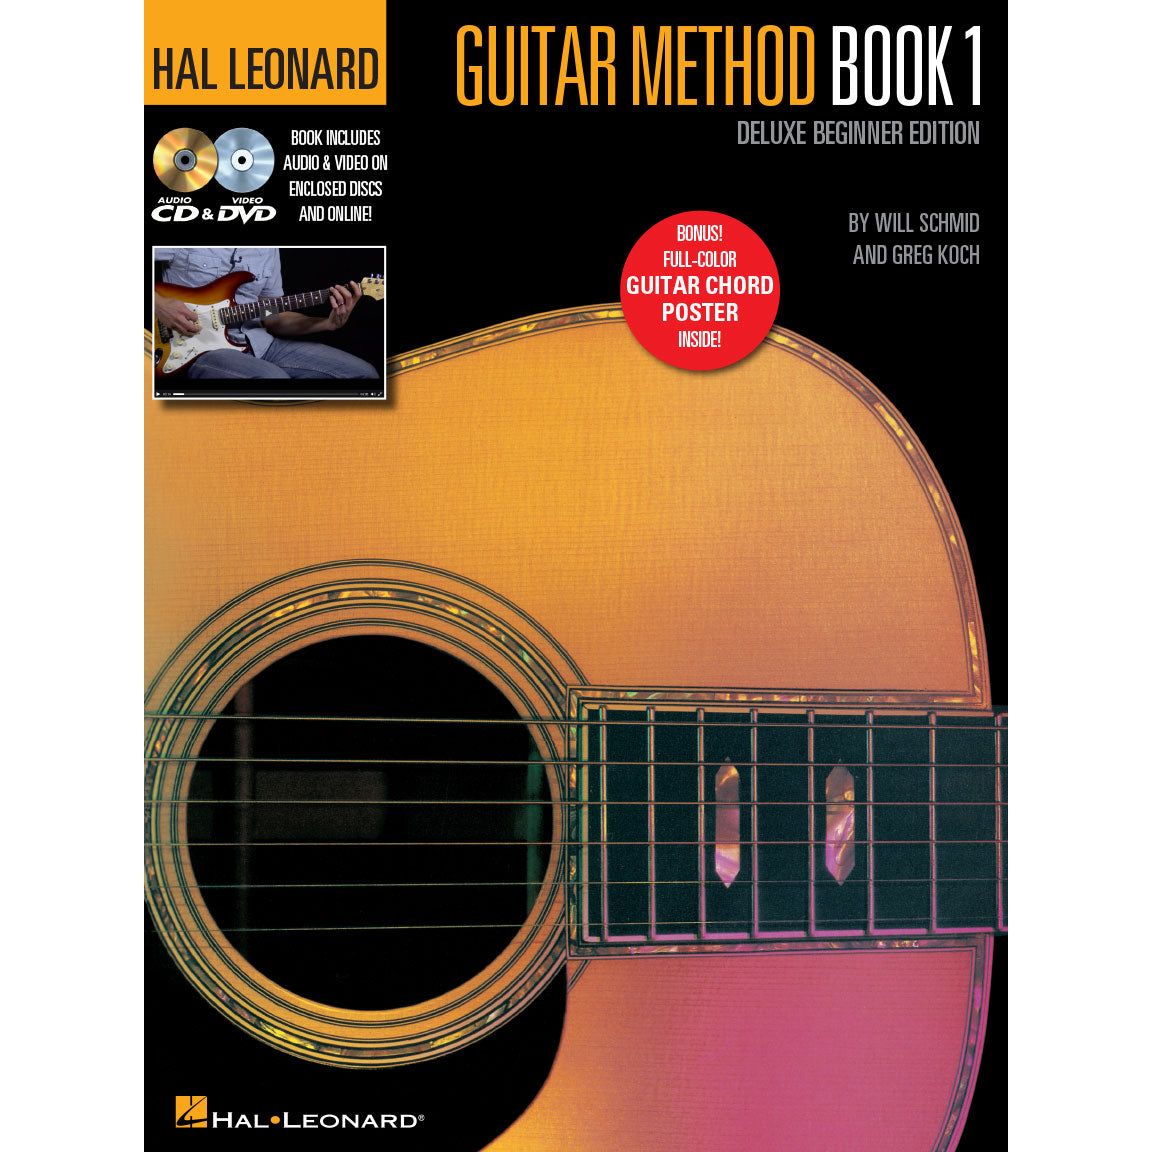 Hal Leonard Guitar Method Book 1 - Deluxe Beginner Edition